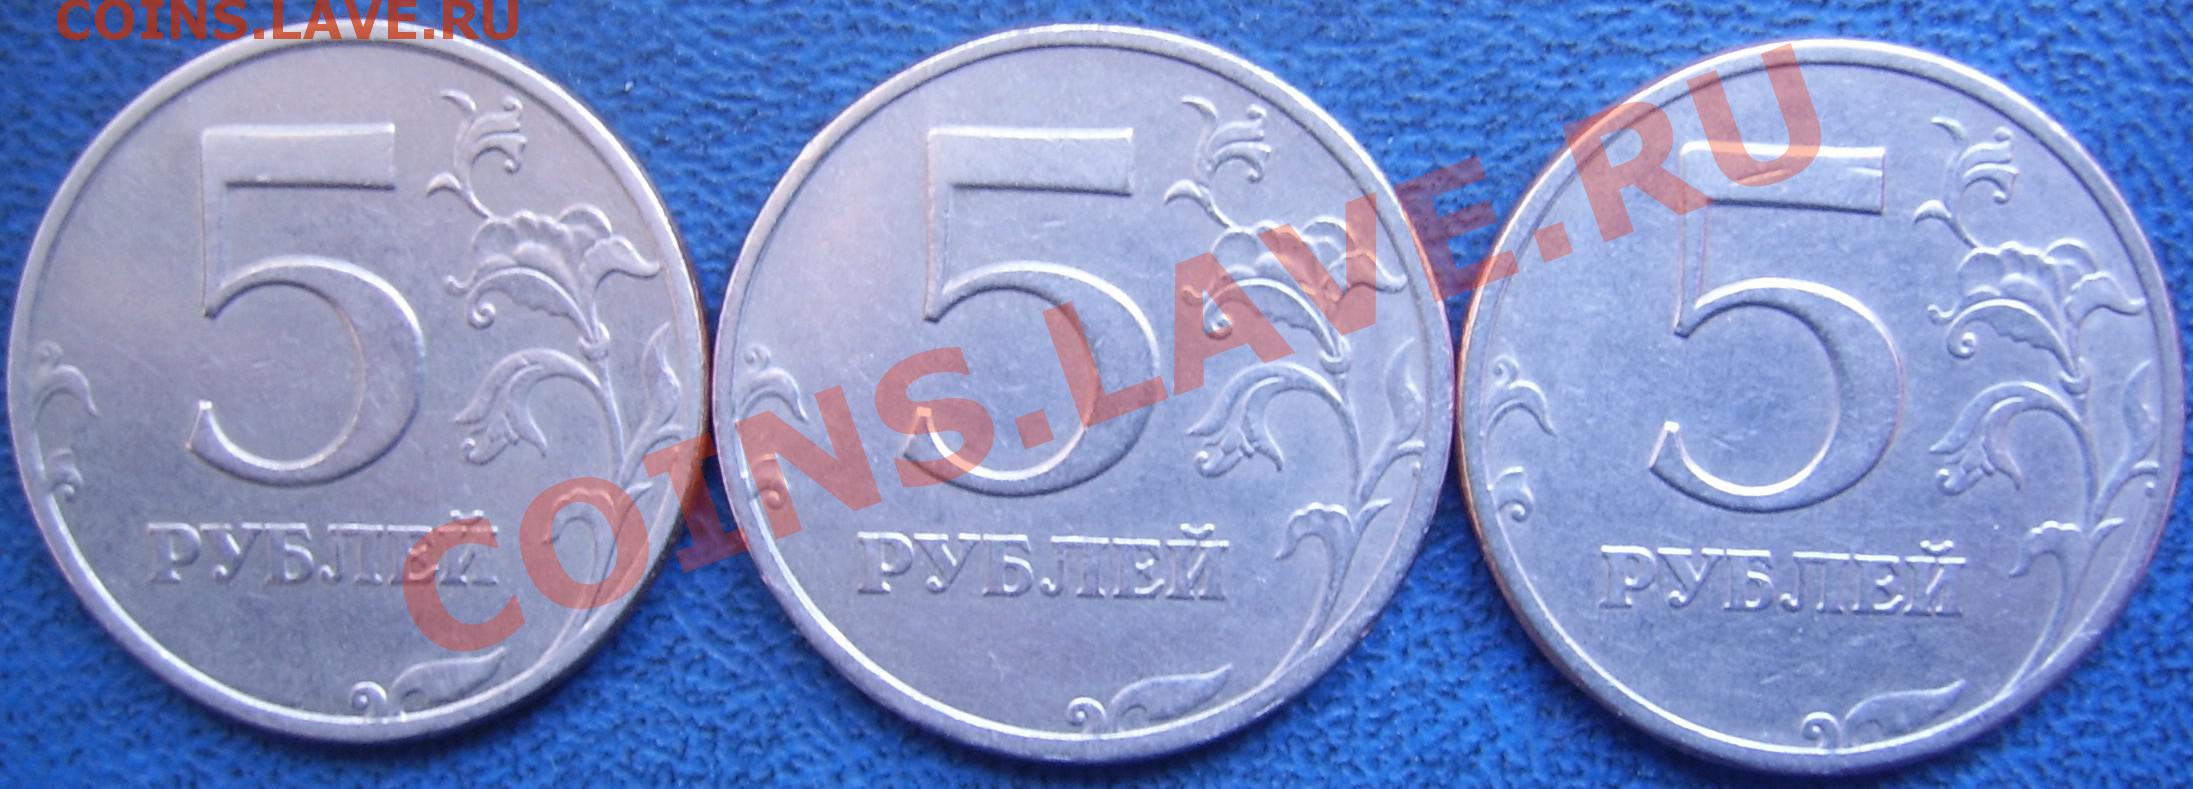 5 от 60 рублей. 5 Рублей 1997 СПМД. Беларусь 1 рубль, 1997. Синие пять рублей. 5 Рублей 1997 г. СПМД - шт. 2.23 Увеличенное изображение реверса.